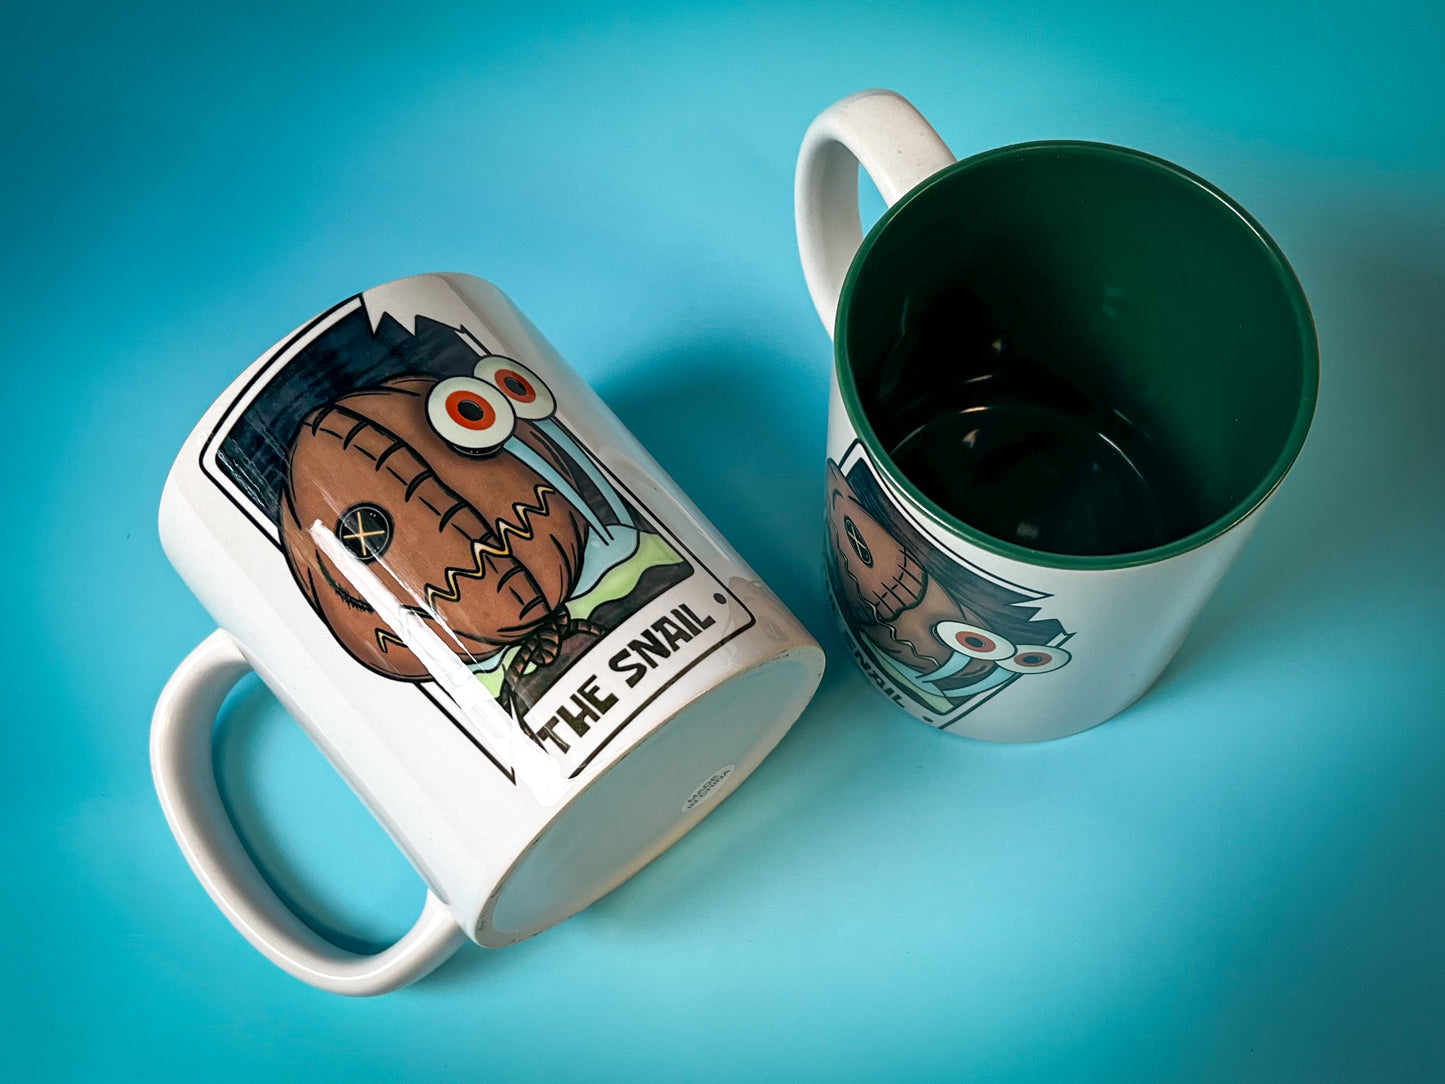 The Snail Tarot Coffee Mug | 11 ounces